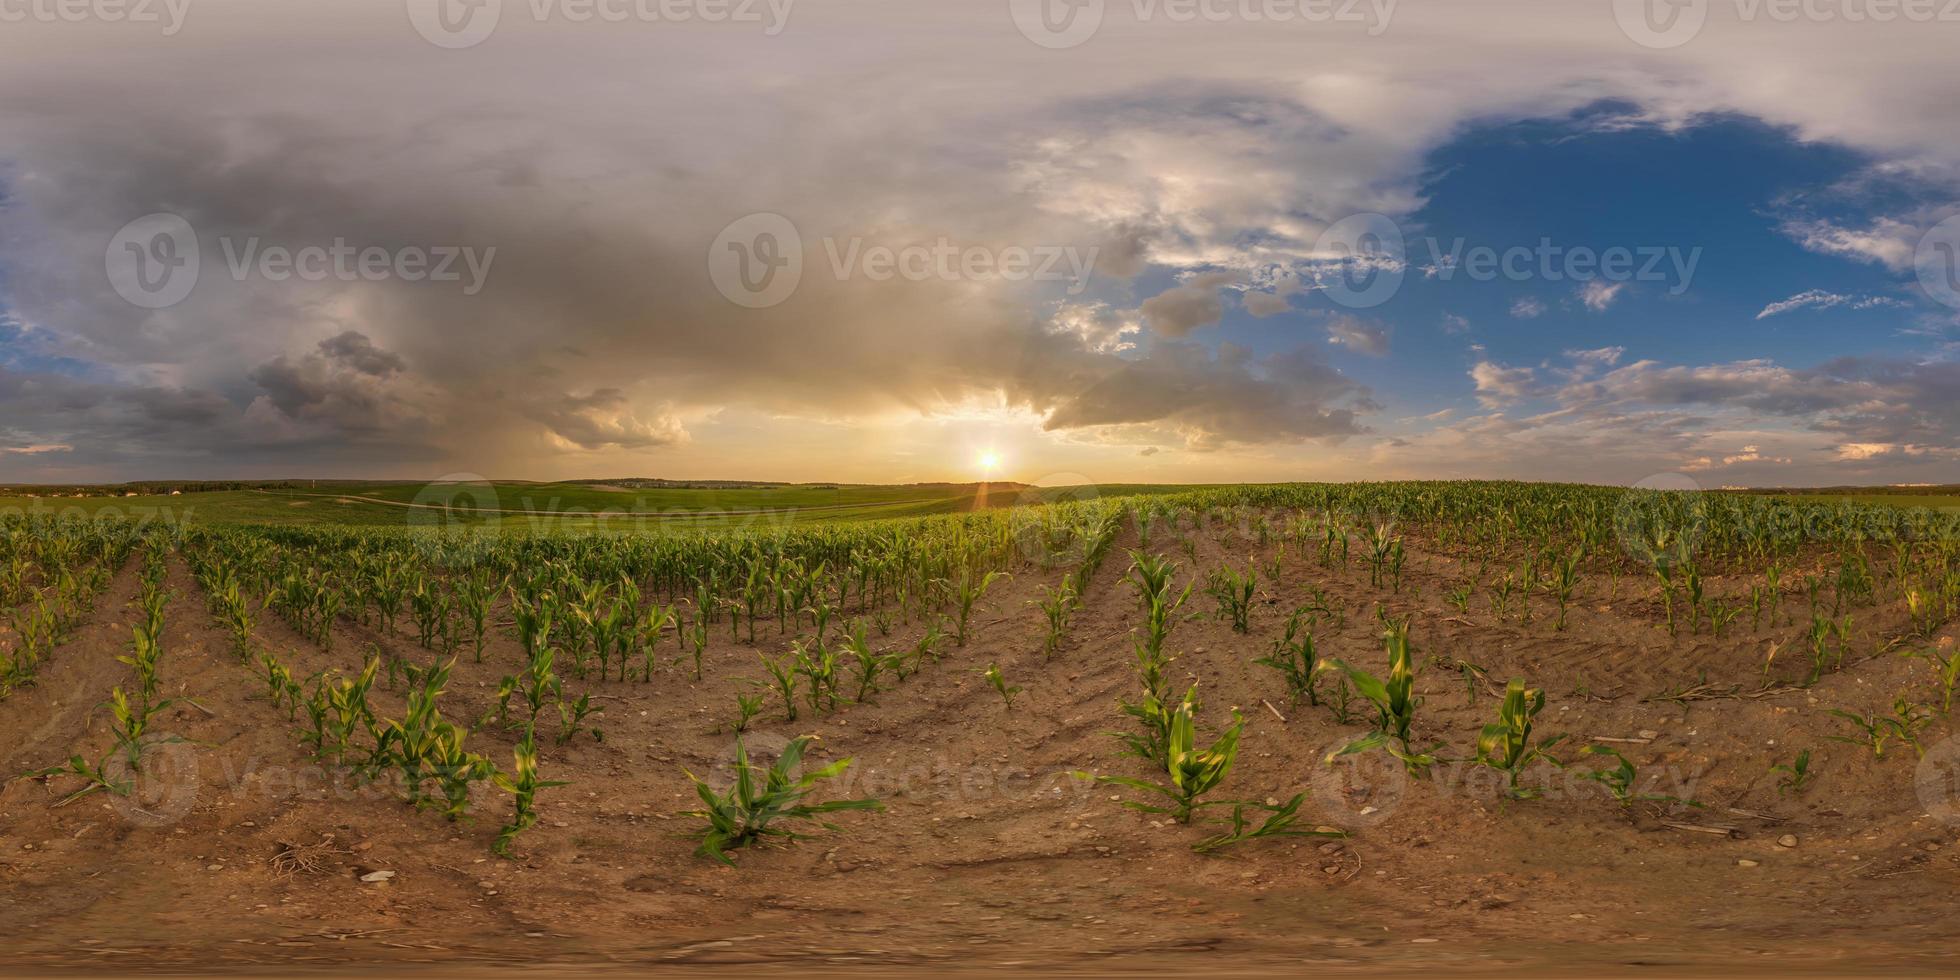 pôr do sol noturno hdri panorama 360 entre campos de milho agrícolas com nuvens rosa em projeção esférica equiretangular pode ser usado como substituto do céu, pronto para conteúdo de realidade virtual foto